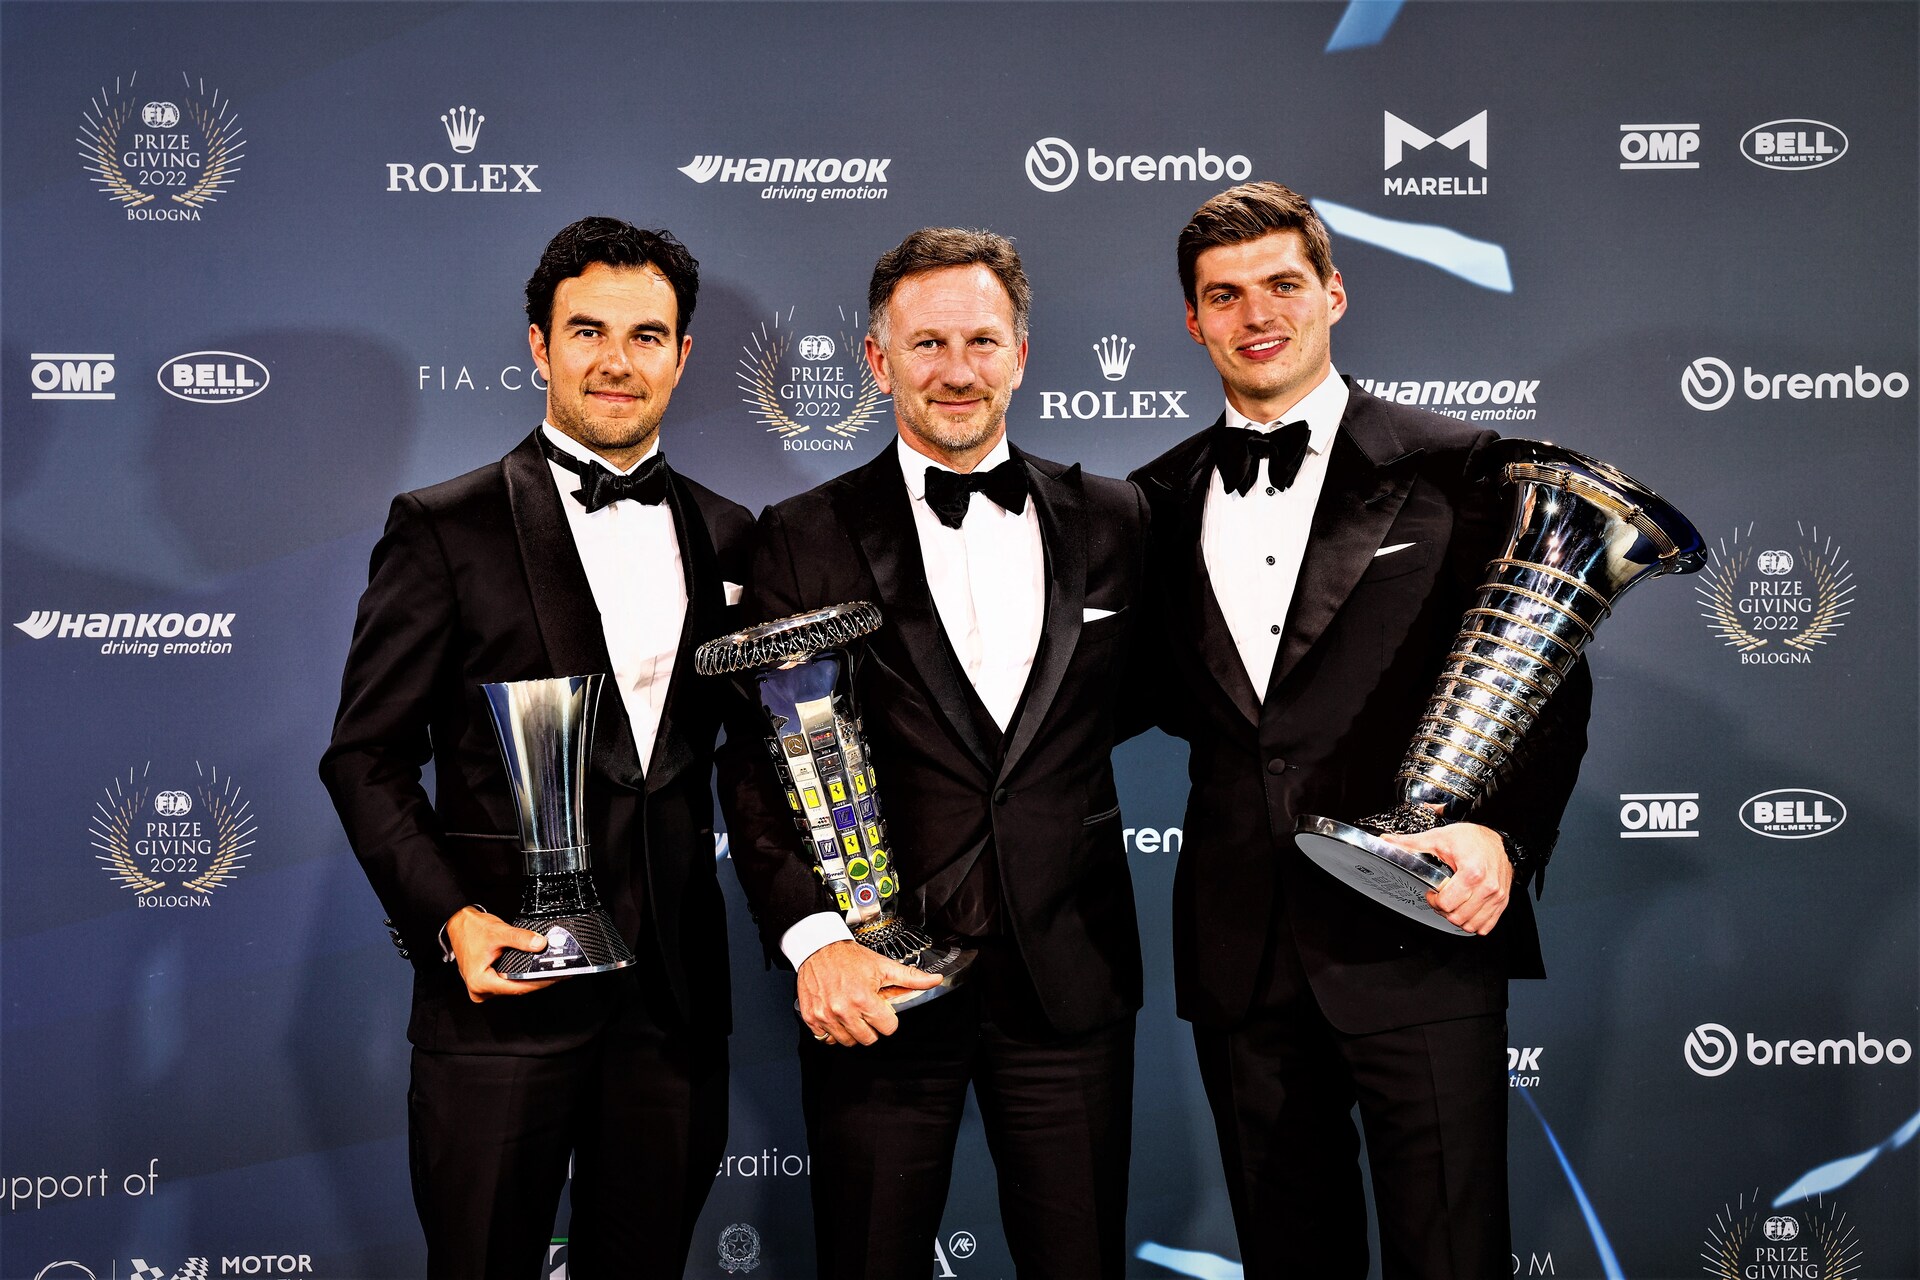 نوآوری در ورزش موتوری: مراسم جوایز FIA 2022 در بولونیا کریستین هورنر، رئیس تیم مسابقه ردبول در فرمول 1، بین رانندگان سرجیو پرز و مکس ورشتاپن (عکس: رسانه FIA)